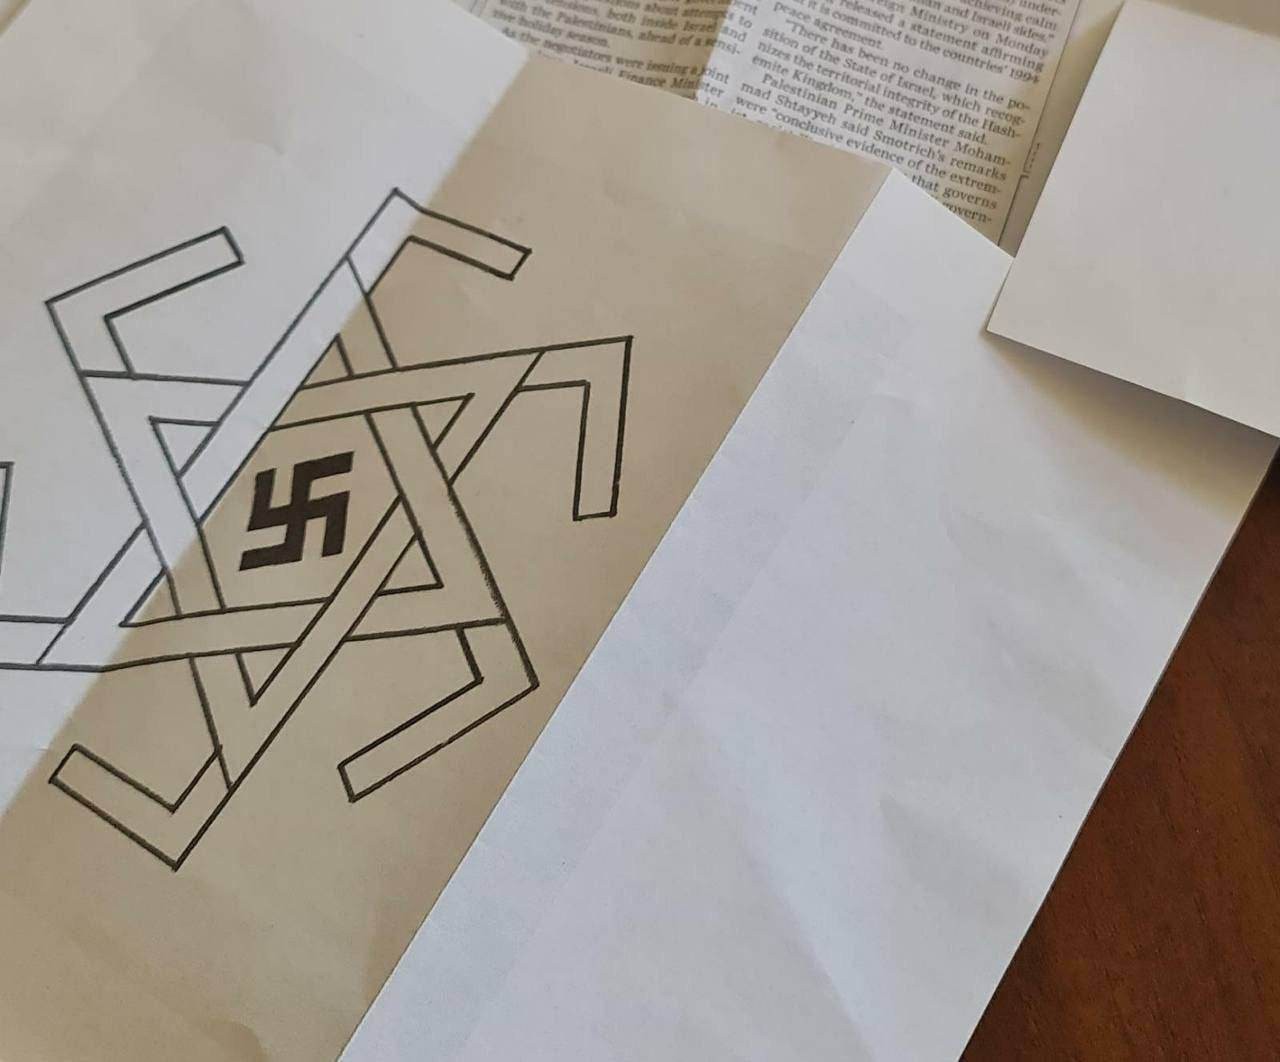 وصول رسالة تهديد للوزير المتطرف سموتريتش مرفقة بصورة لشعار النازية